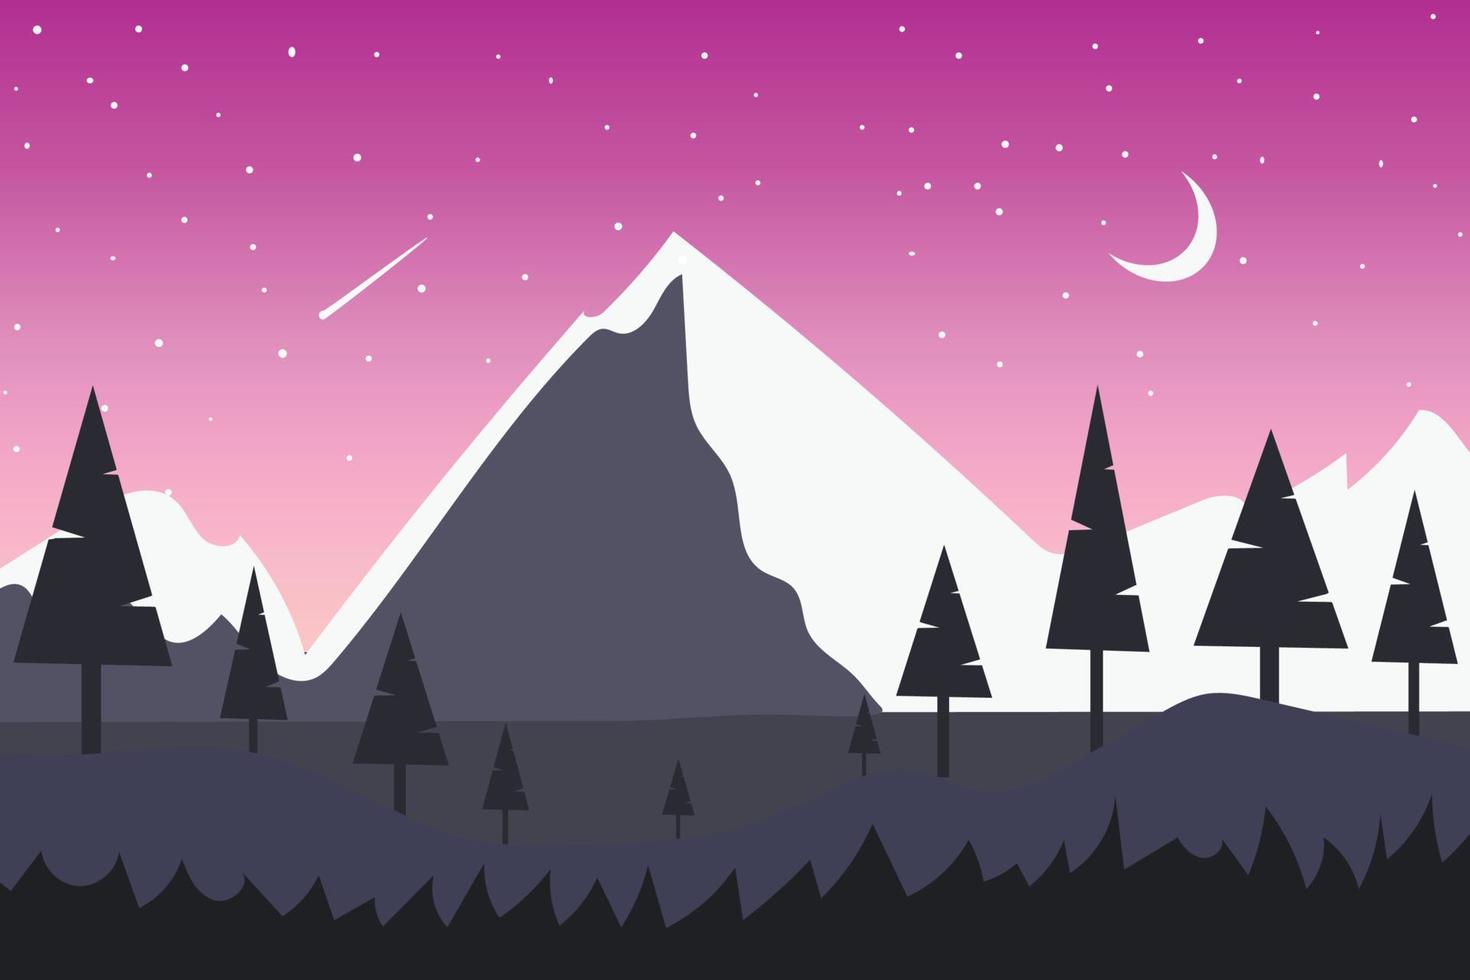 vue sur la montagne avec des collines blanches comme neige et des collines violet foncé sous un ciel nuageux rose. fond de lune blanche avec des étoiles filantes lumineuses avec vue parallaxe des collines blanches comme neige, illustration de vecteur de dessin animé.